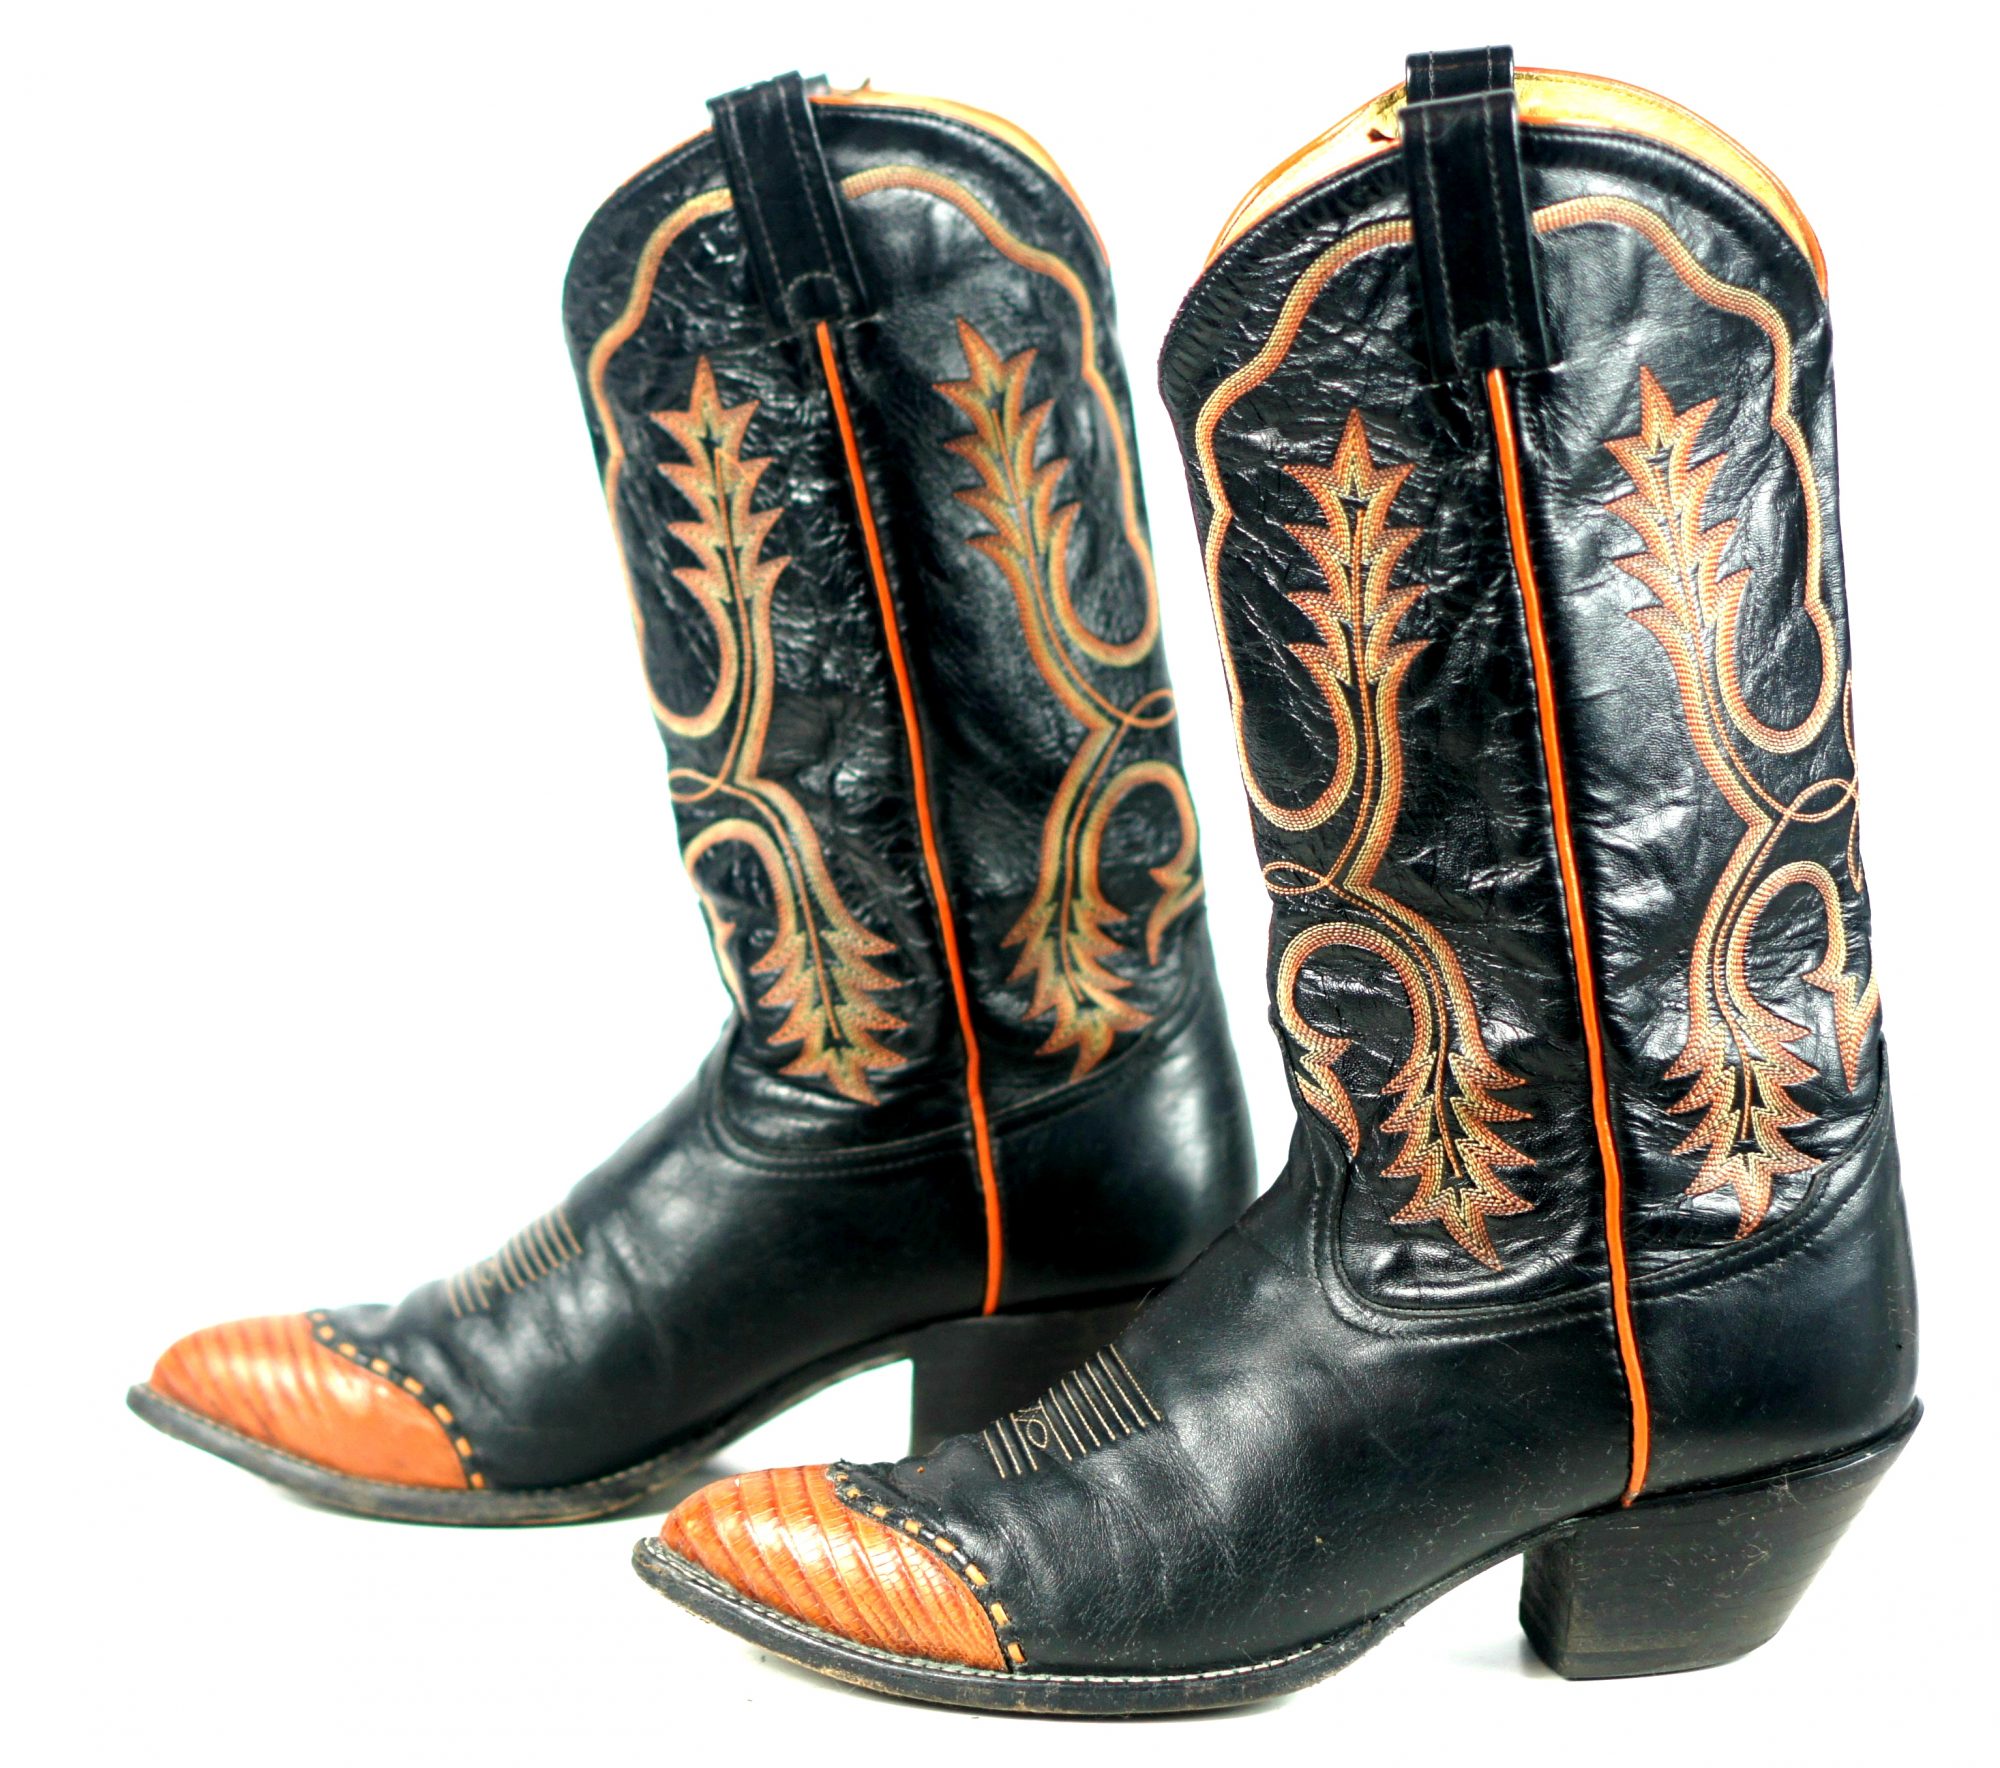 tony lama boots for women